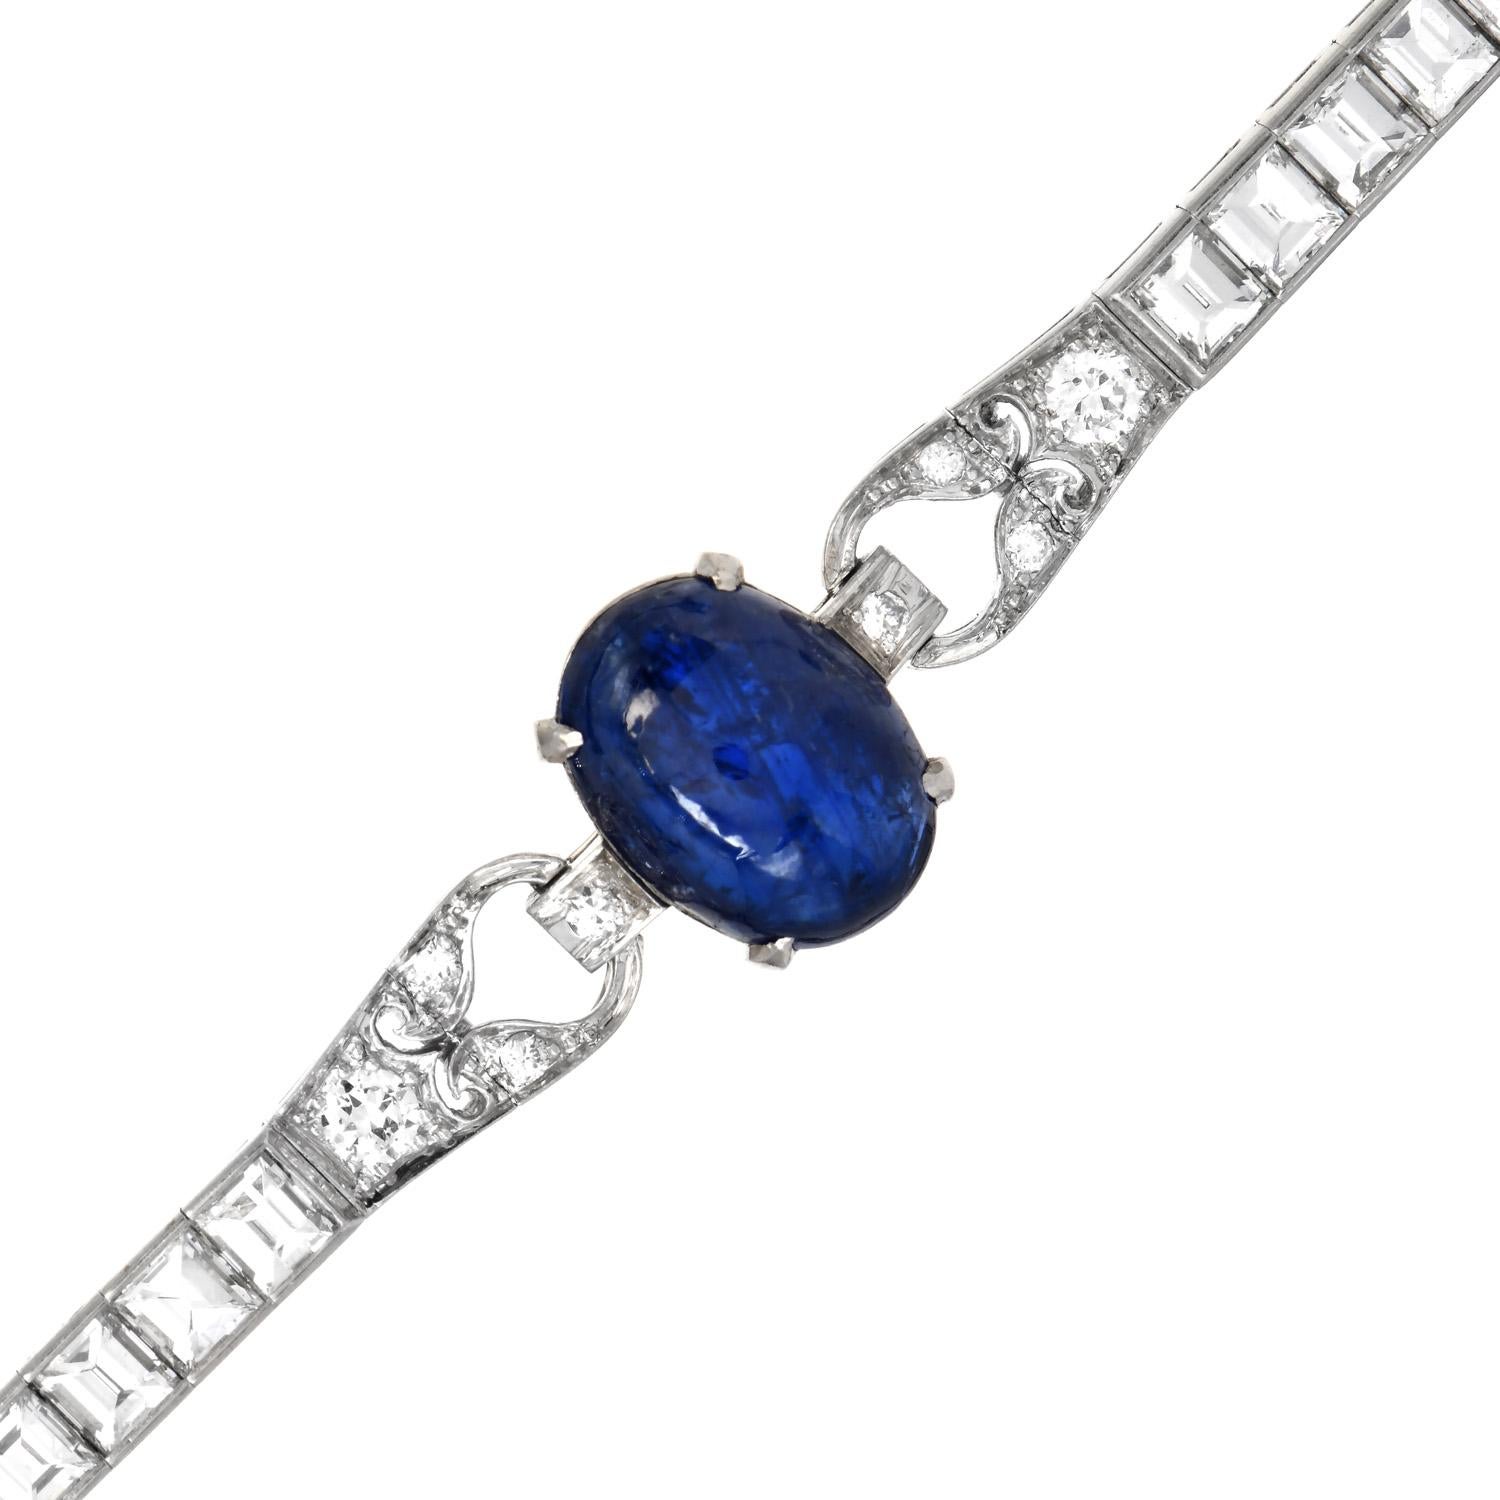 Dieses atemberaubende antike Art-Deco-Armband mit Cabochon-Saphir wurde in luxuriösem Platin gefertigt. 

Dieses Stück aus den 1920er Jahren ist von Ost nach West mit Diamanten besetzt und mit drei echten blauen Saphiren im Ovalschliff in